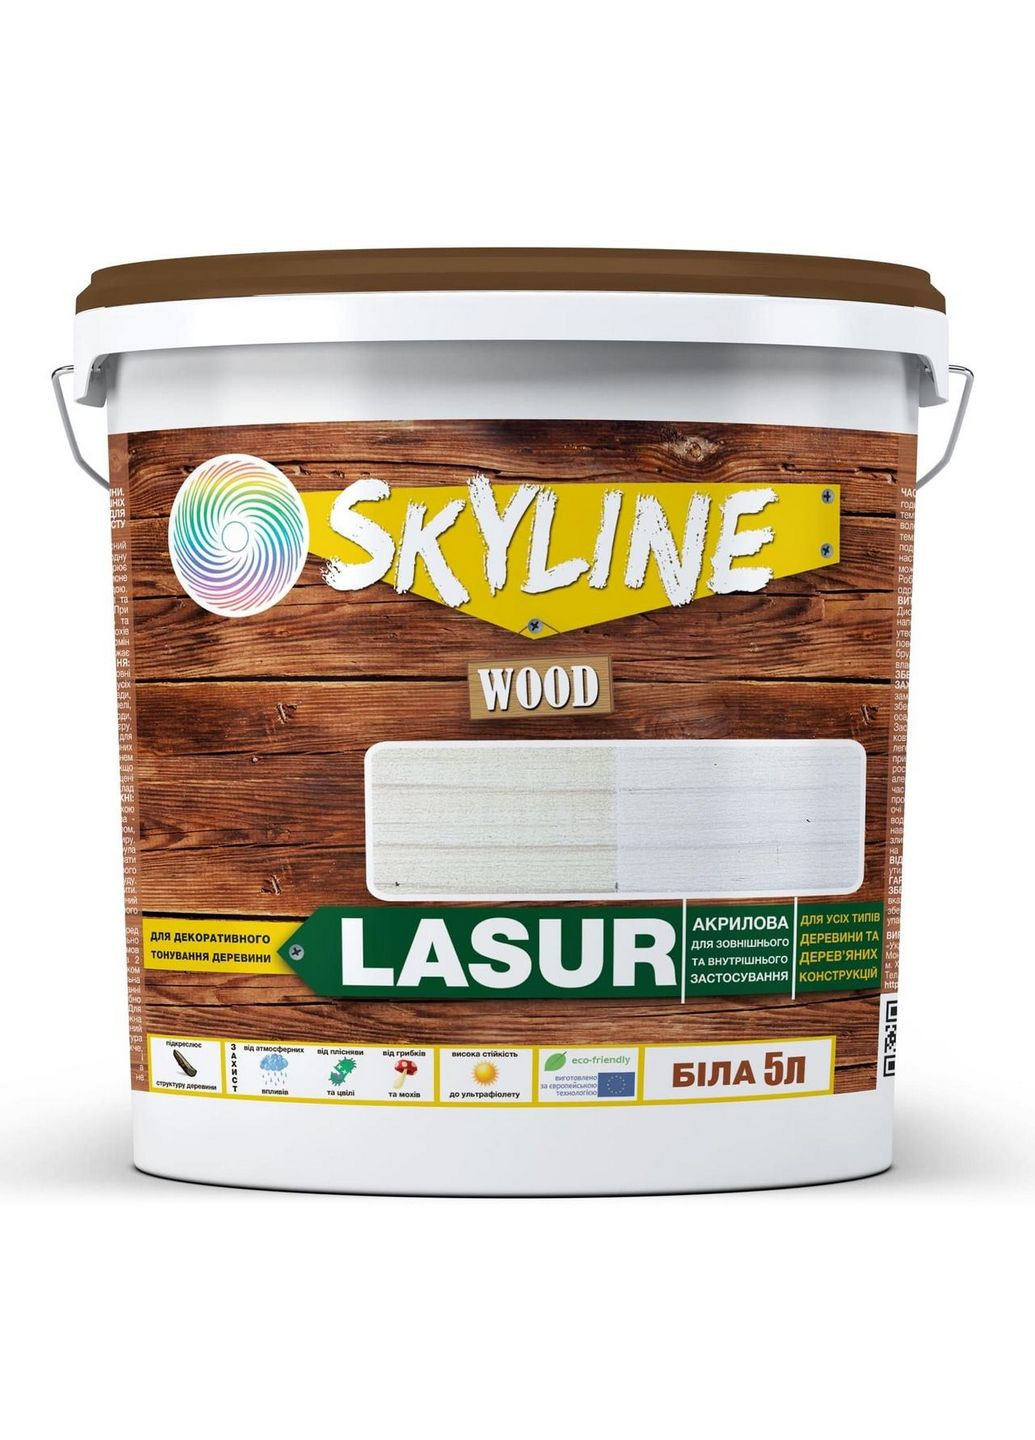 Лазурь декоративно-защитная для обработки дерева LASUR Wood 5 л SkyLine (289368595)